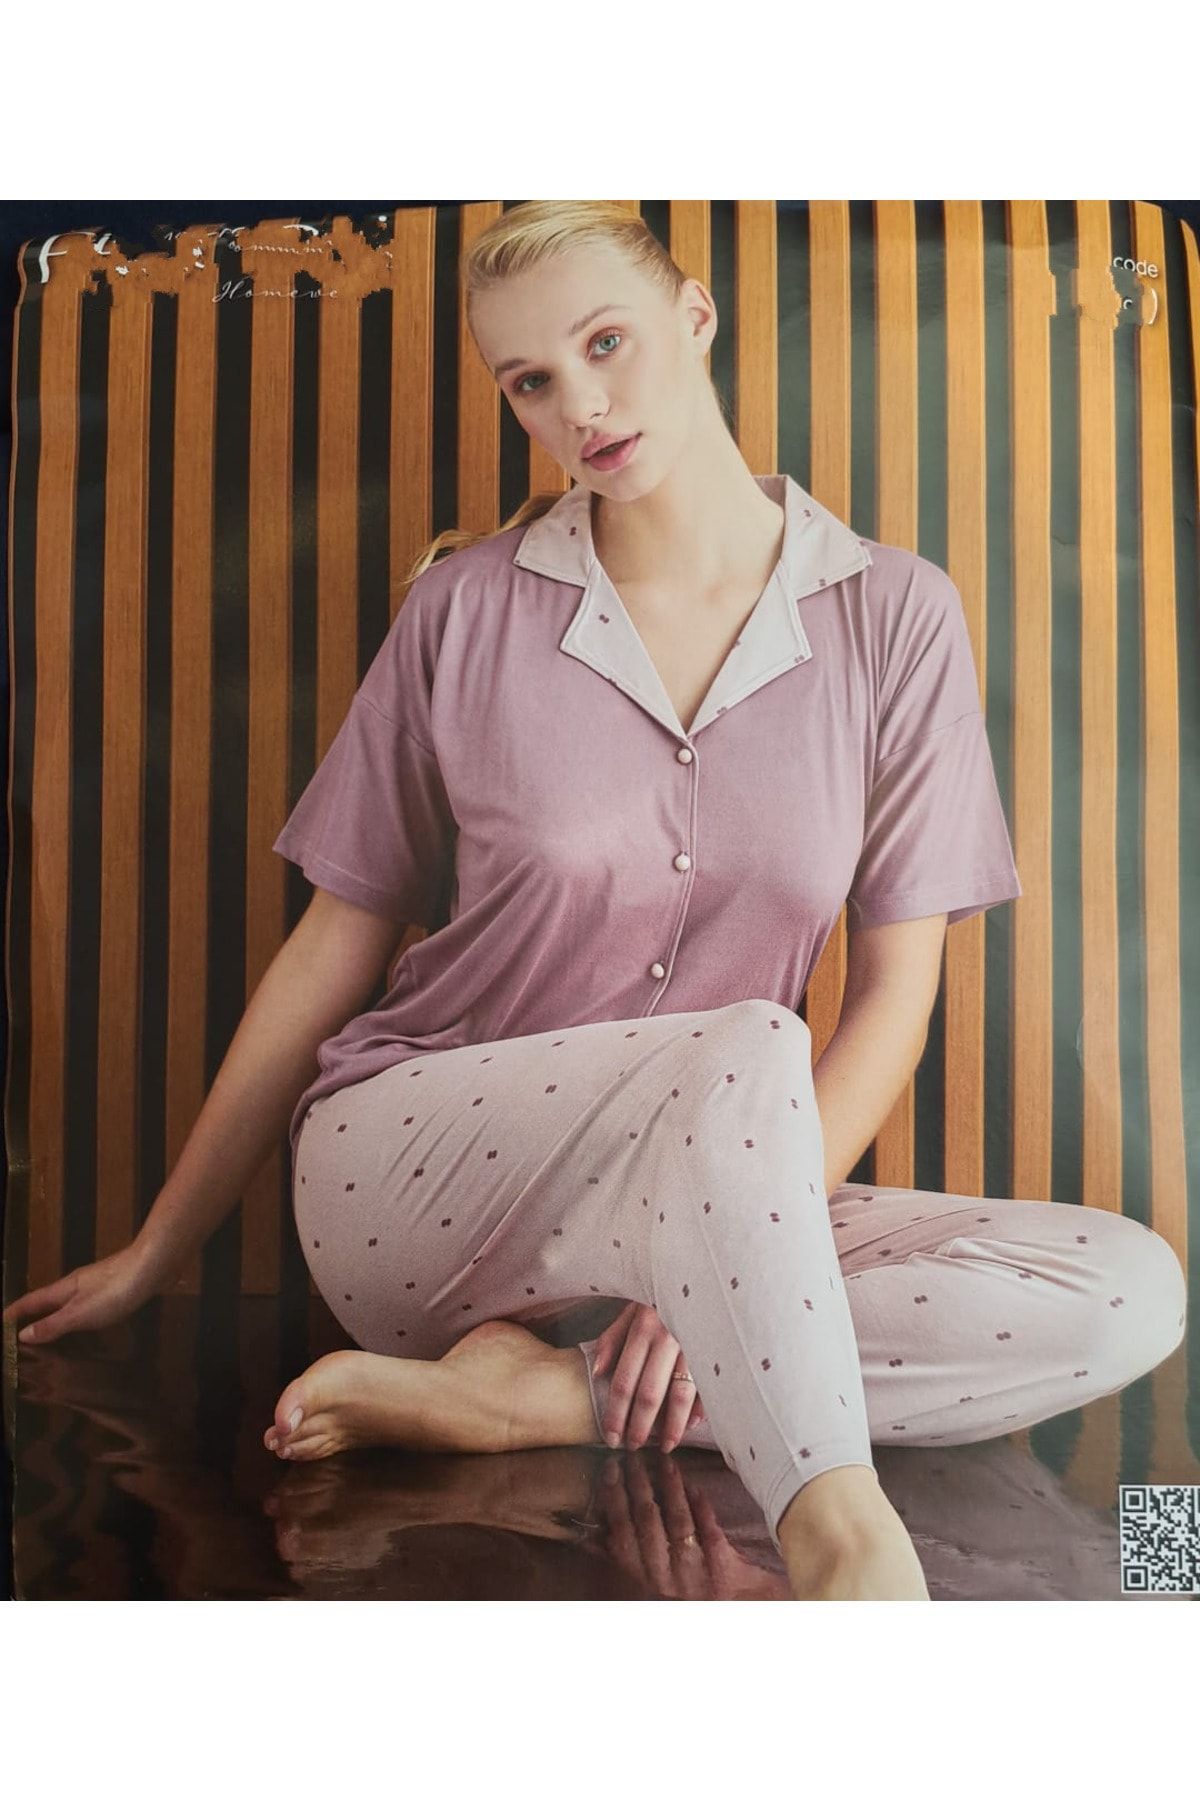 Pijamoni Kadın Kısa Kol Boydan Düğmeli Pijama Takımı RAHAT KULLANIM